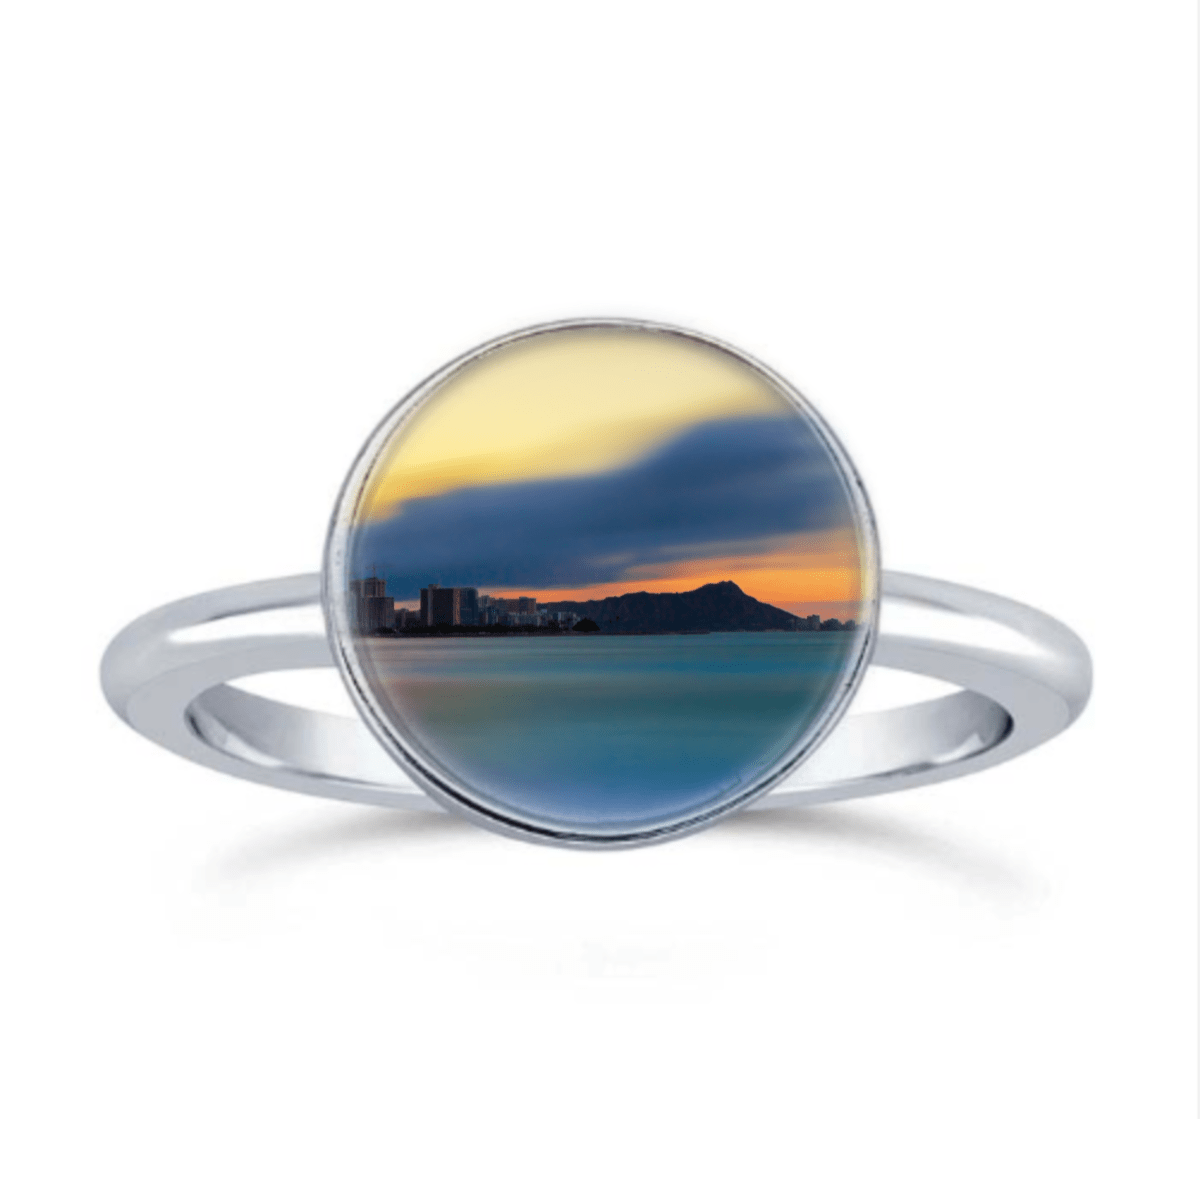 Oahu's Diamond Head Ring by Josh Astern